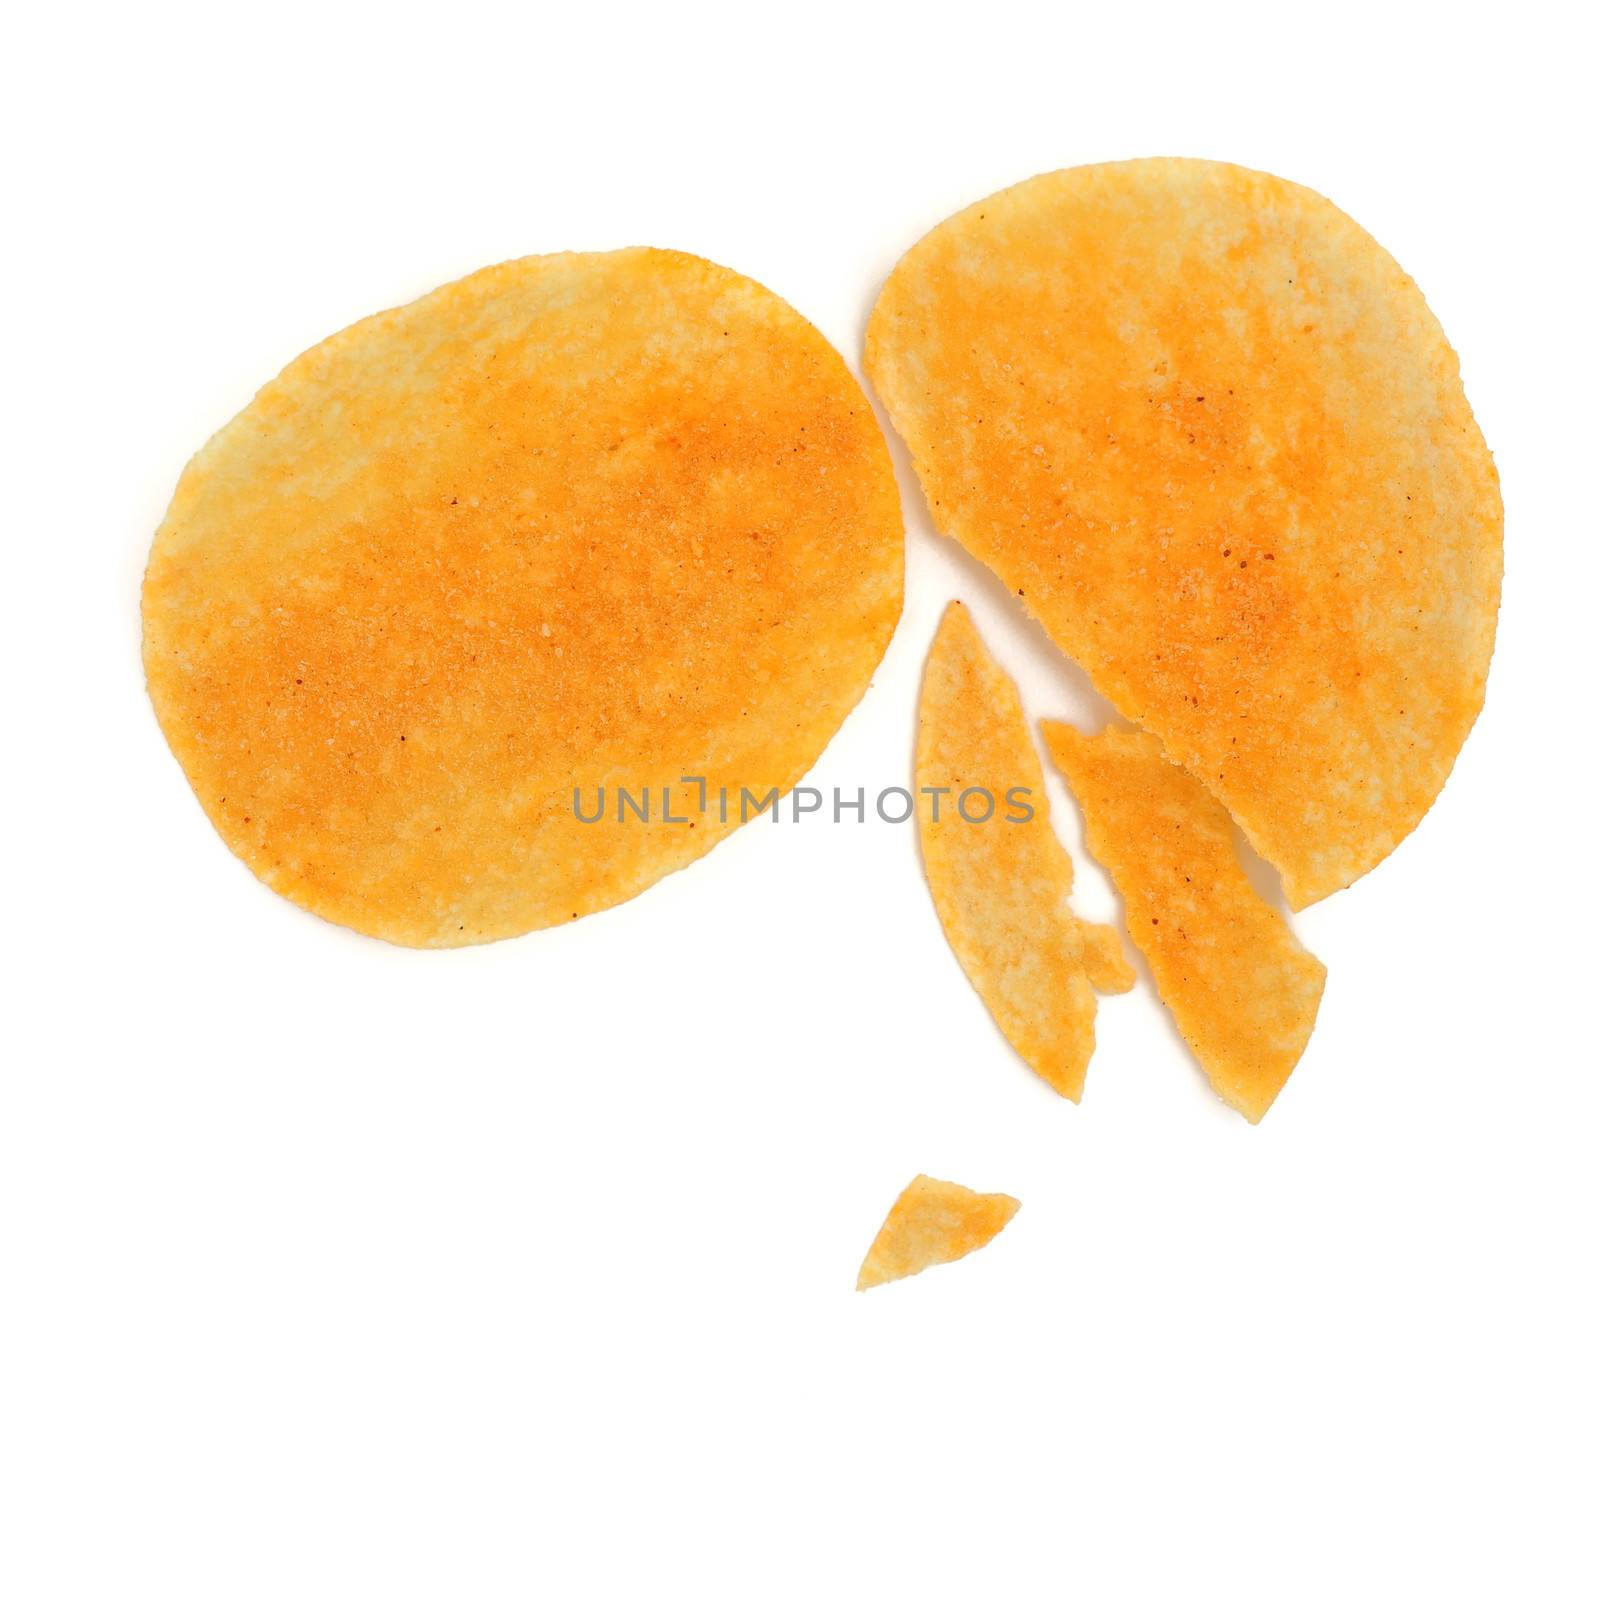 Potato chips by antpkr